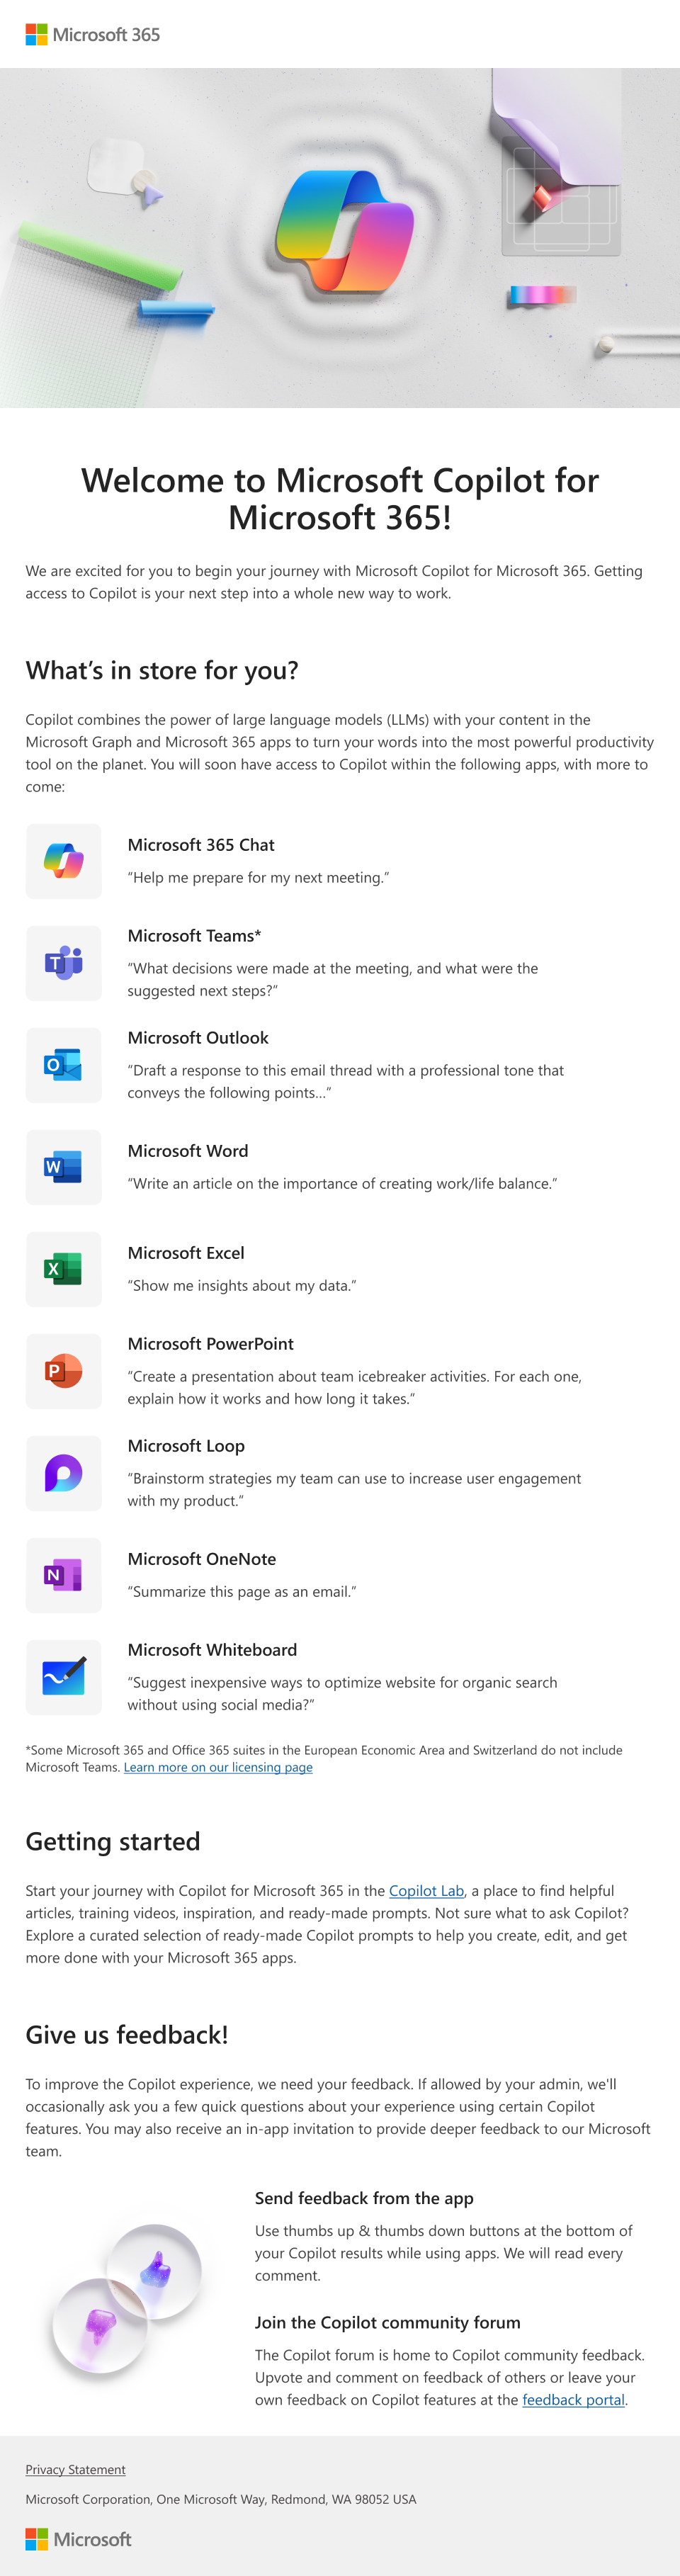 Immagine di un messaggio di posta elettronica che presenta Microsoft Copilot per Microsoft 365 e le relative funzionalità che un amministratore può fornire agli utenti.